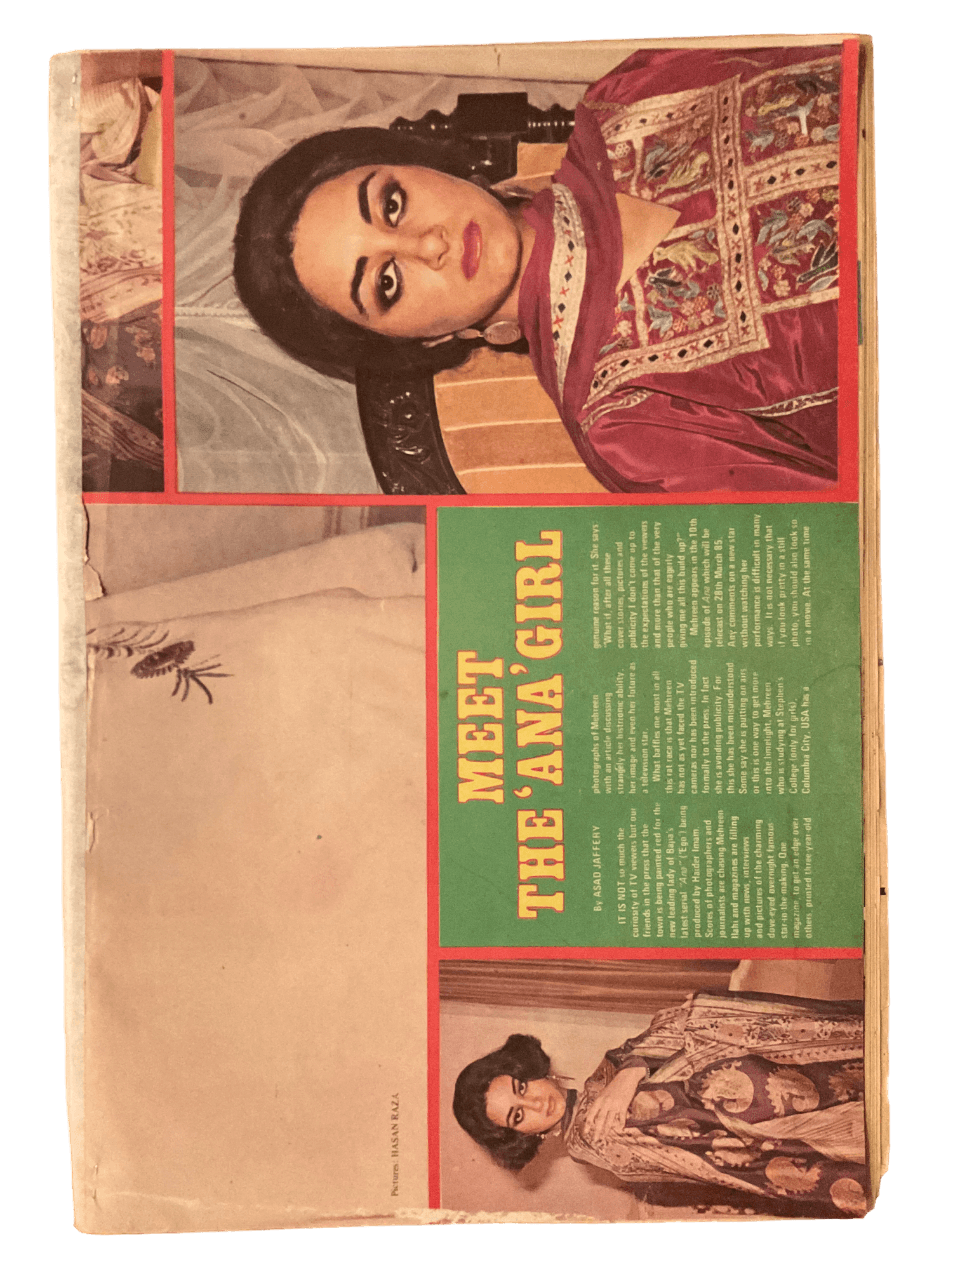 MAG Weekly (March 14, 1985) - KHAJISTAN™